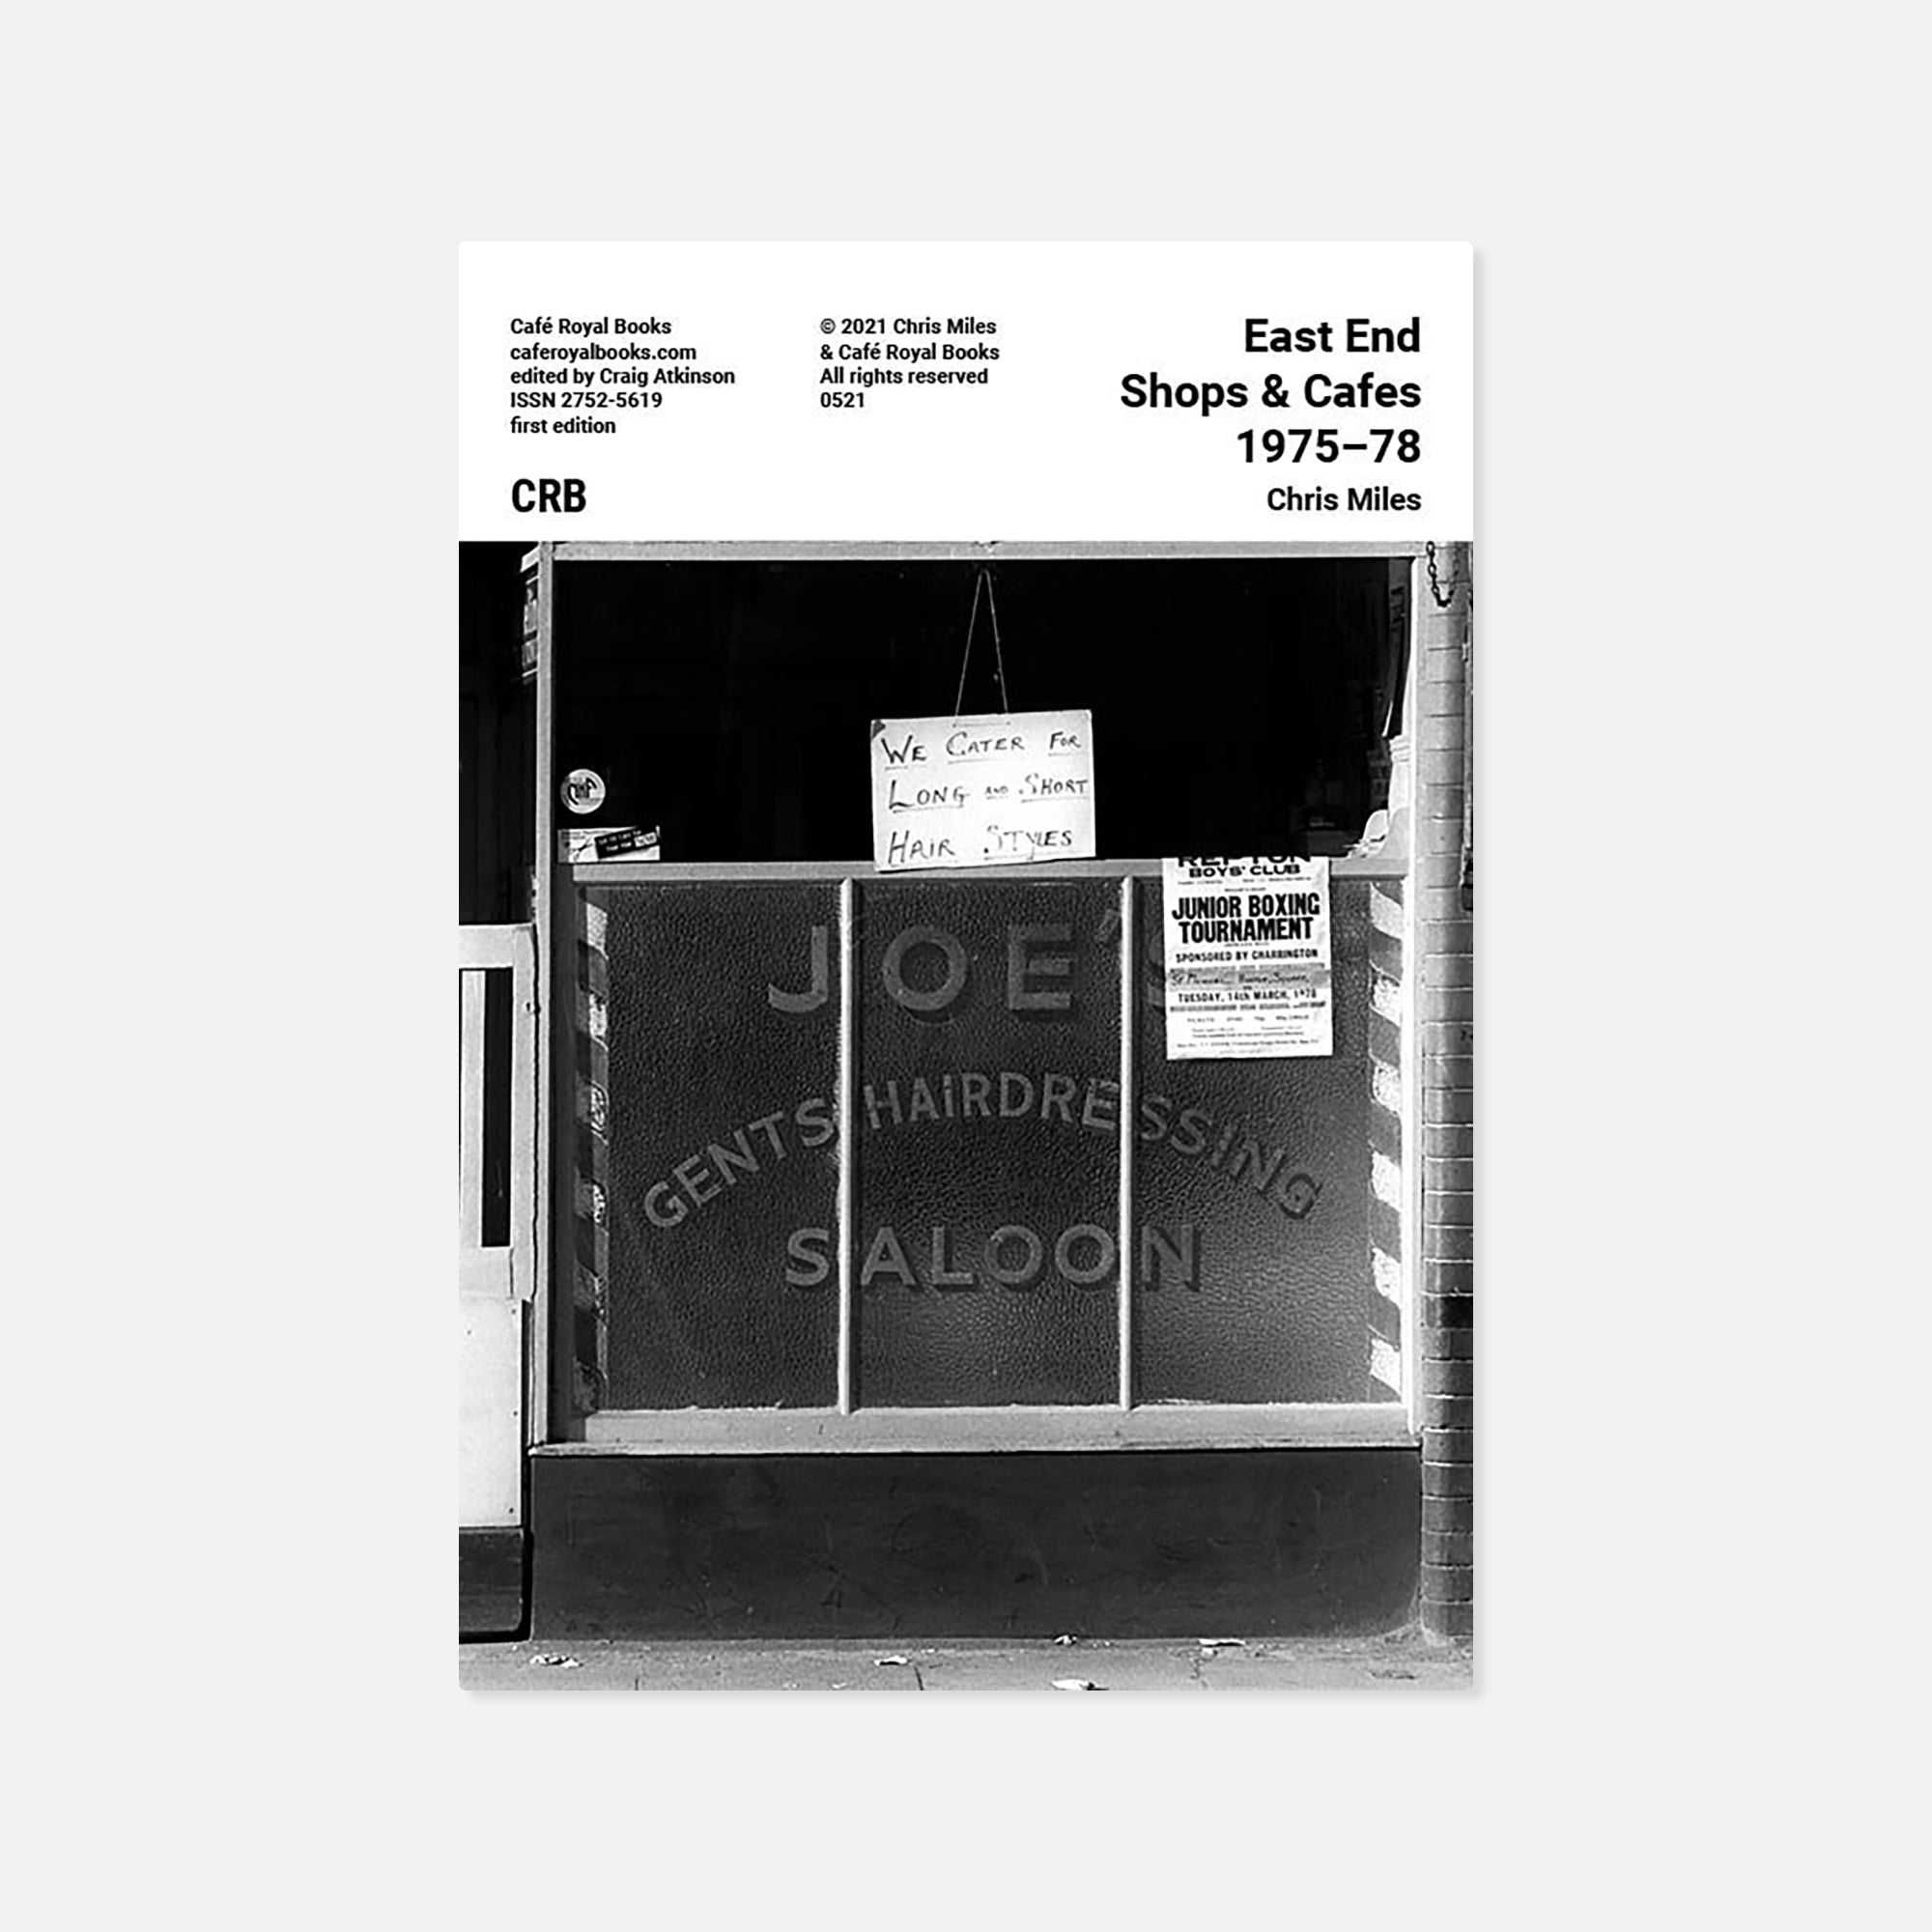 Chris Miles — East End Shops & Cafes 1975-78